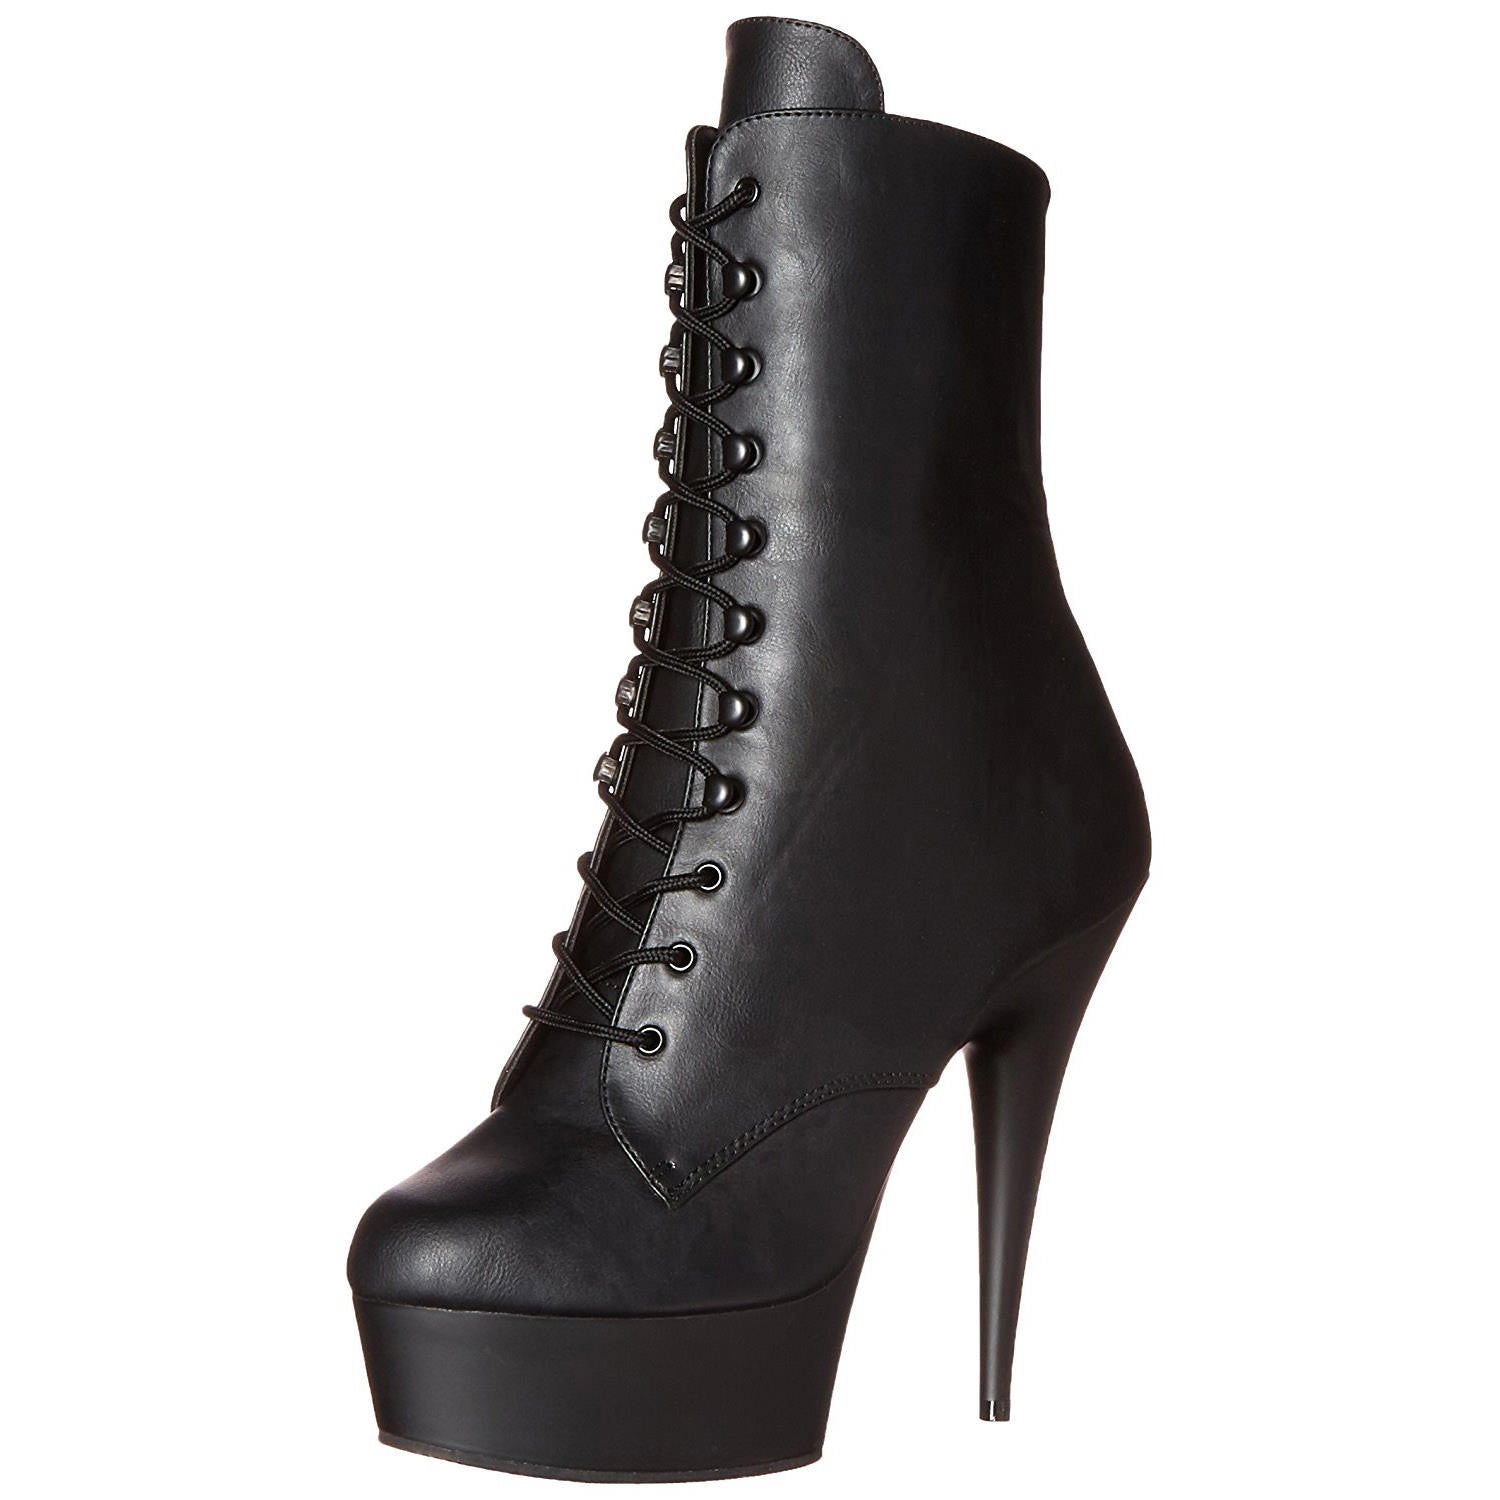 Pleaser DELIGHT-1020 Black Faux Leather Ankle Boots - Shoecup.com - 7